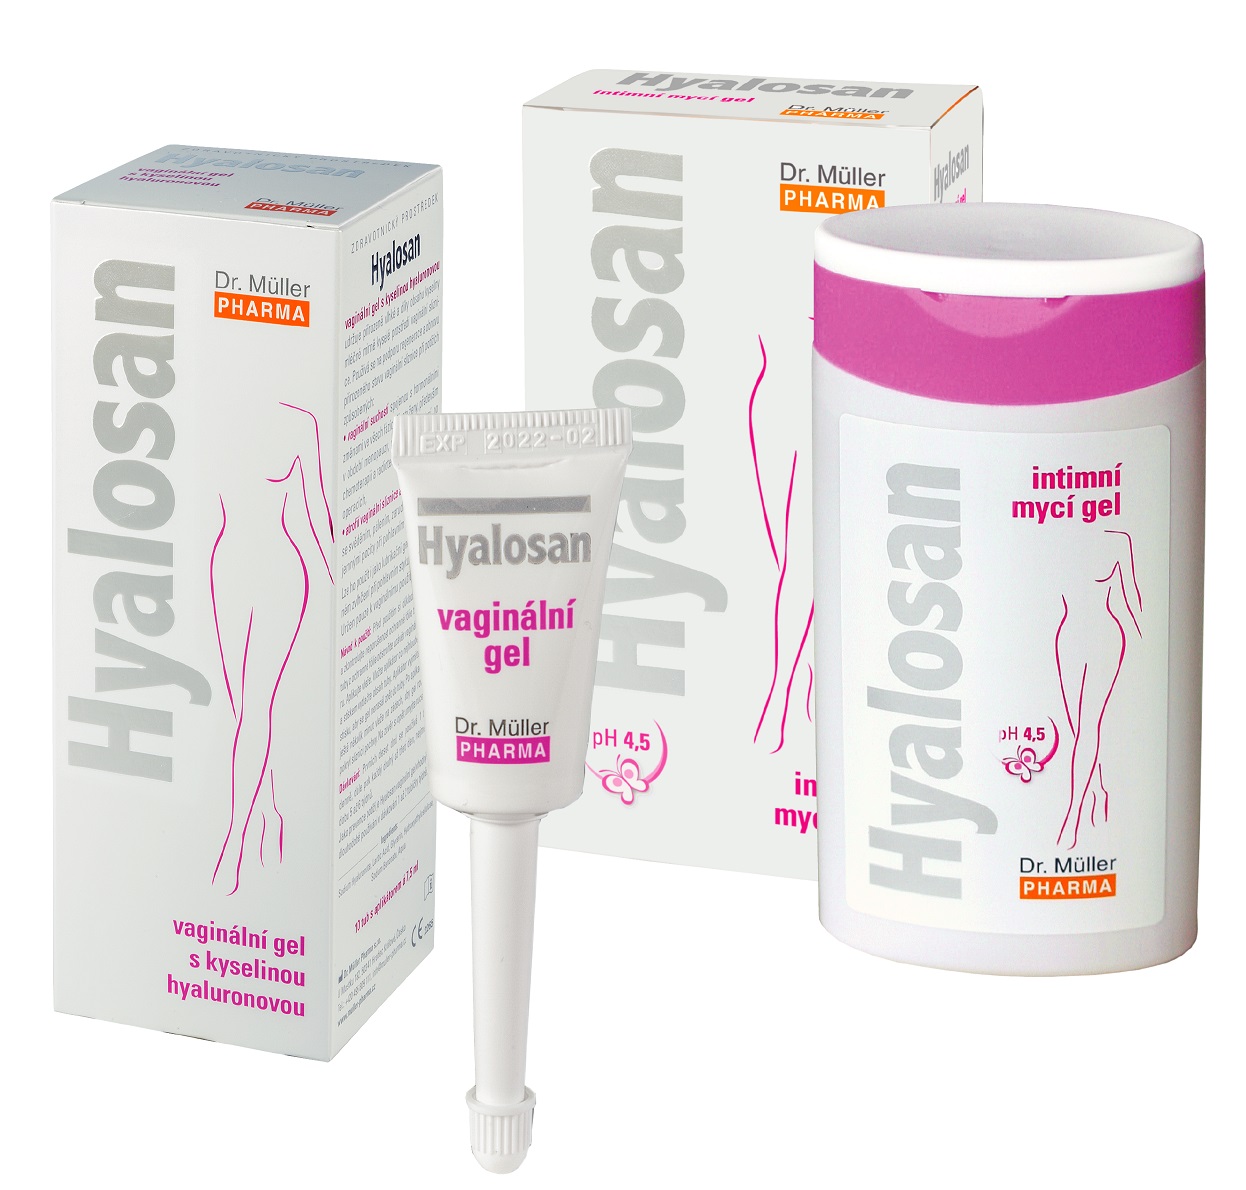 Bộ sản phẩm hỗ trợ giảm viêm phụ khoa Hyalosan | Lazada.vn